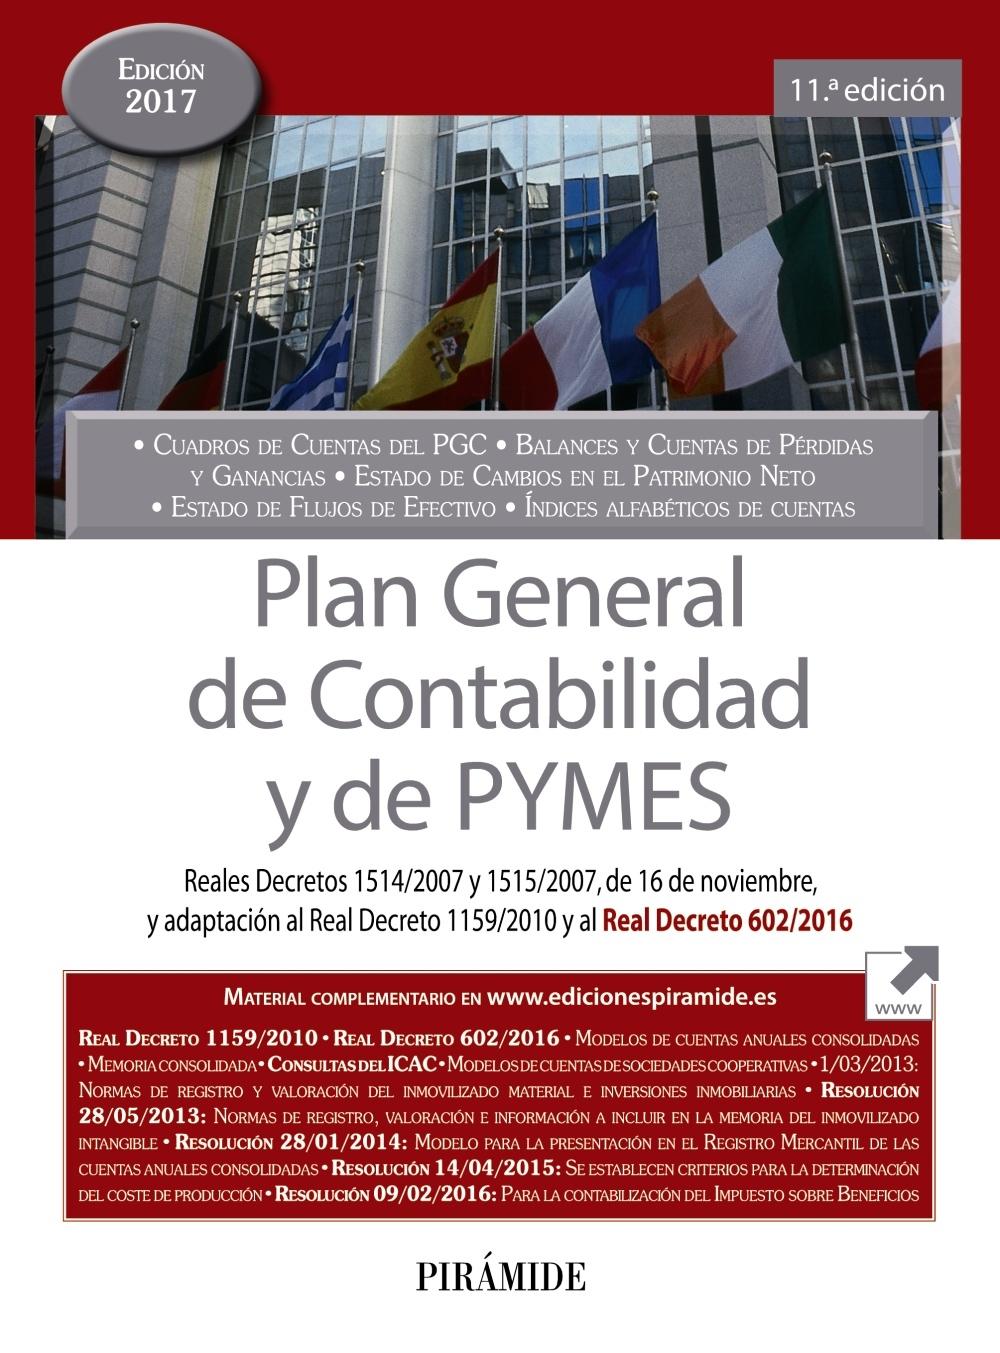 PLAN GENERAL DE CONTABILIDAD Y DE PYMES "REALES DECRETOS 1514/2007 Y 1515/2007, DE 16 DE NOVIEMBRE, Y ADAPTACIÓN". 